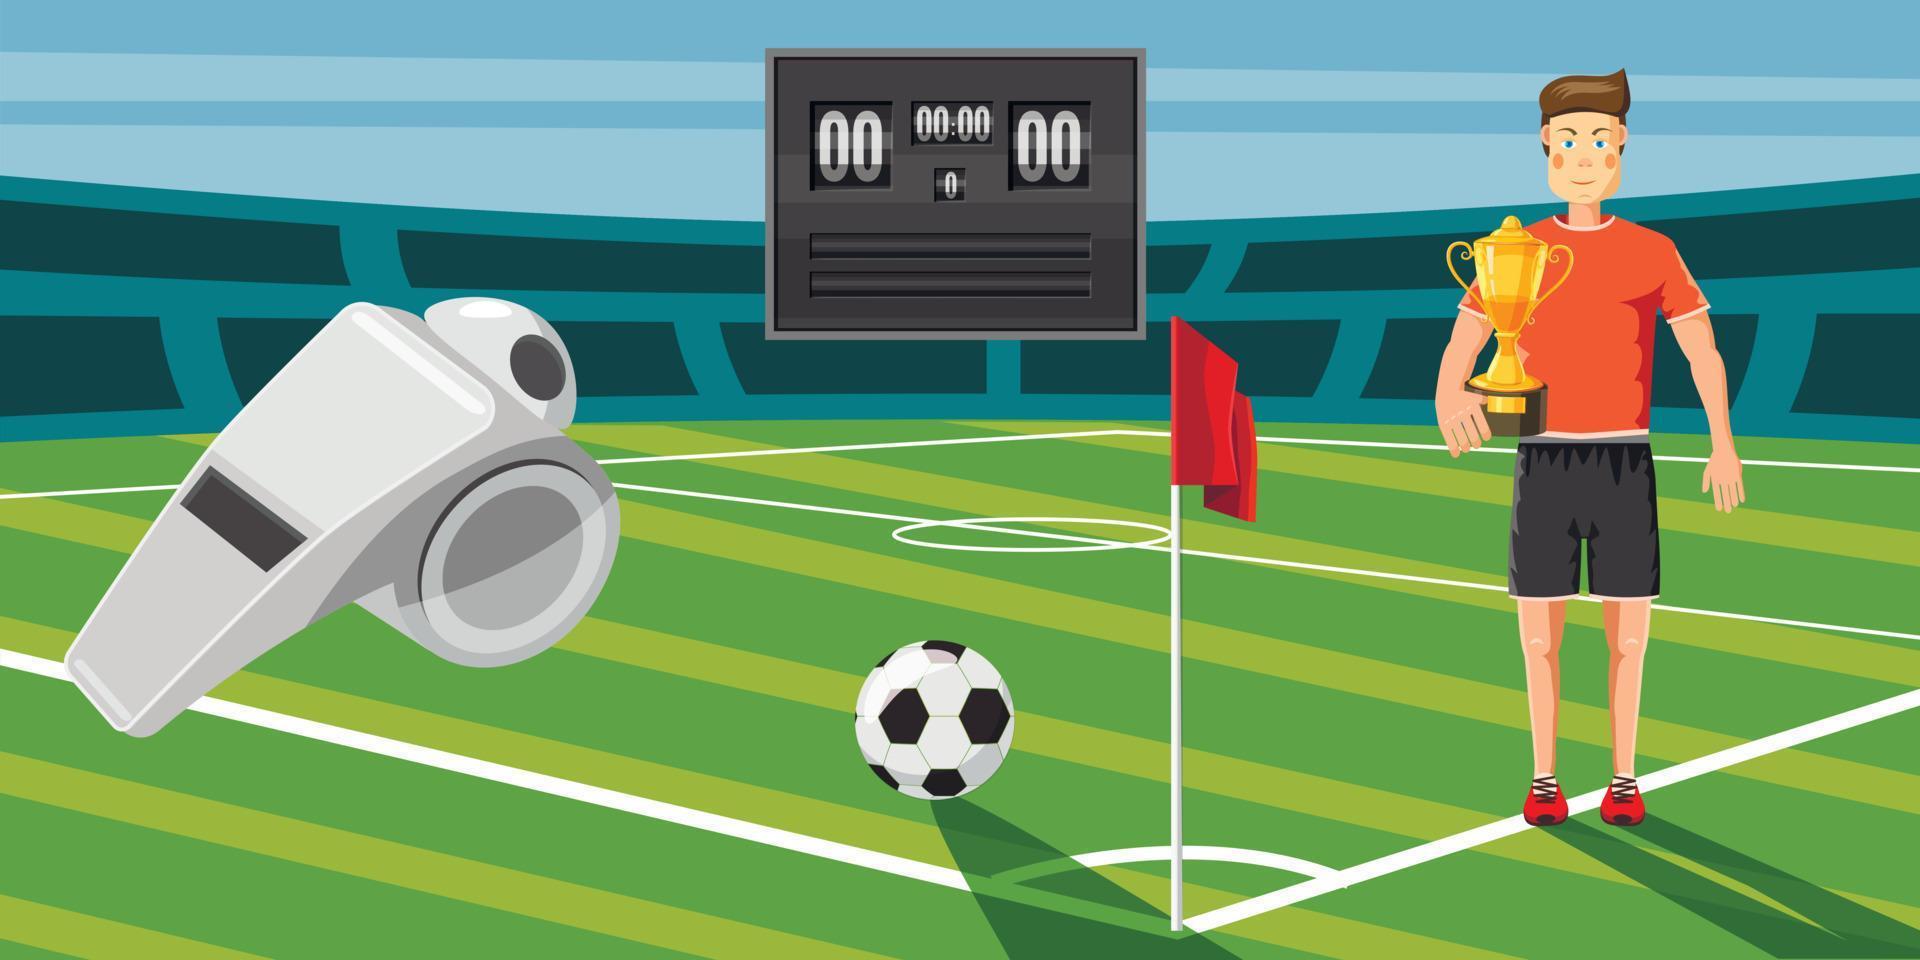 bannière de score de football horizontale, style dessin animé vecteur